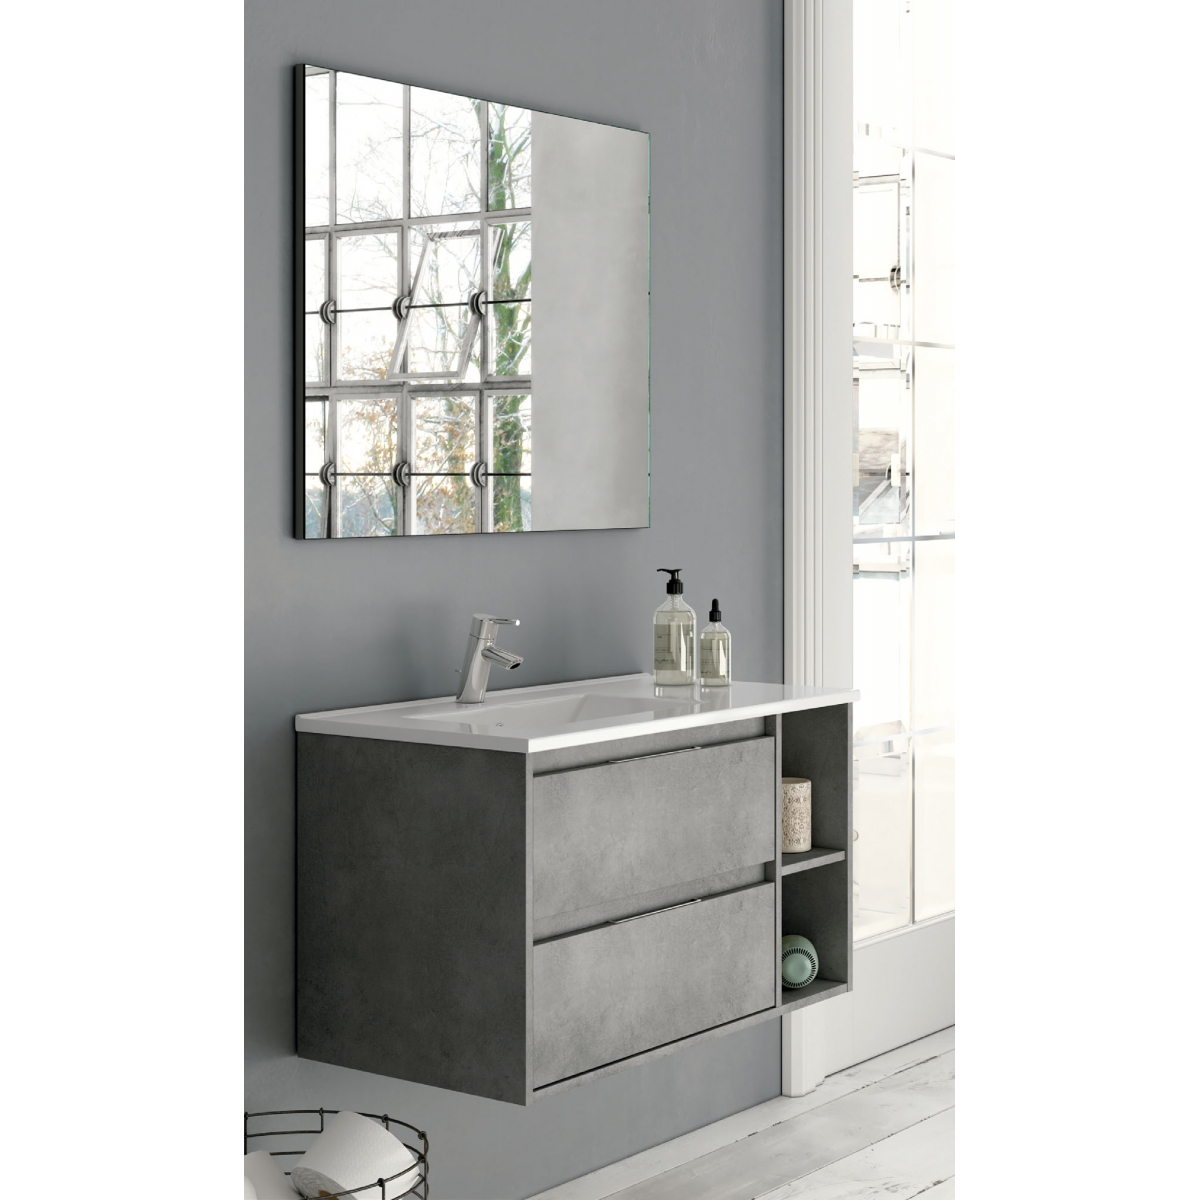 Mueble de baño suspendido Dover de 120 cm de ancho color Cemento con lavabo integrado